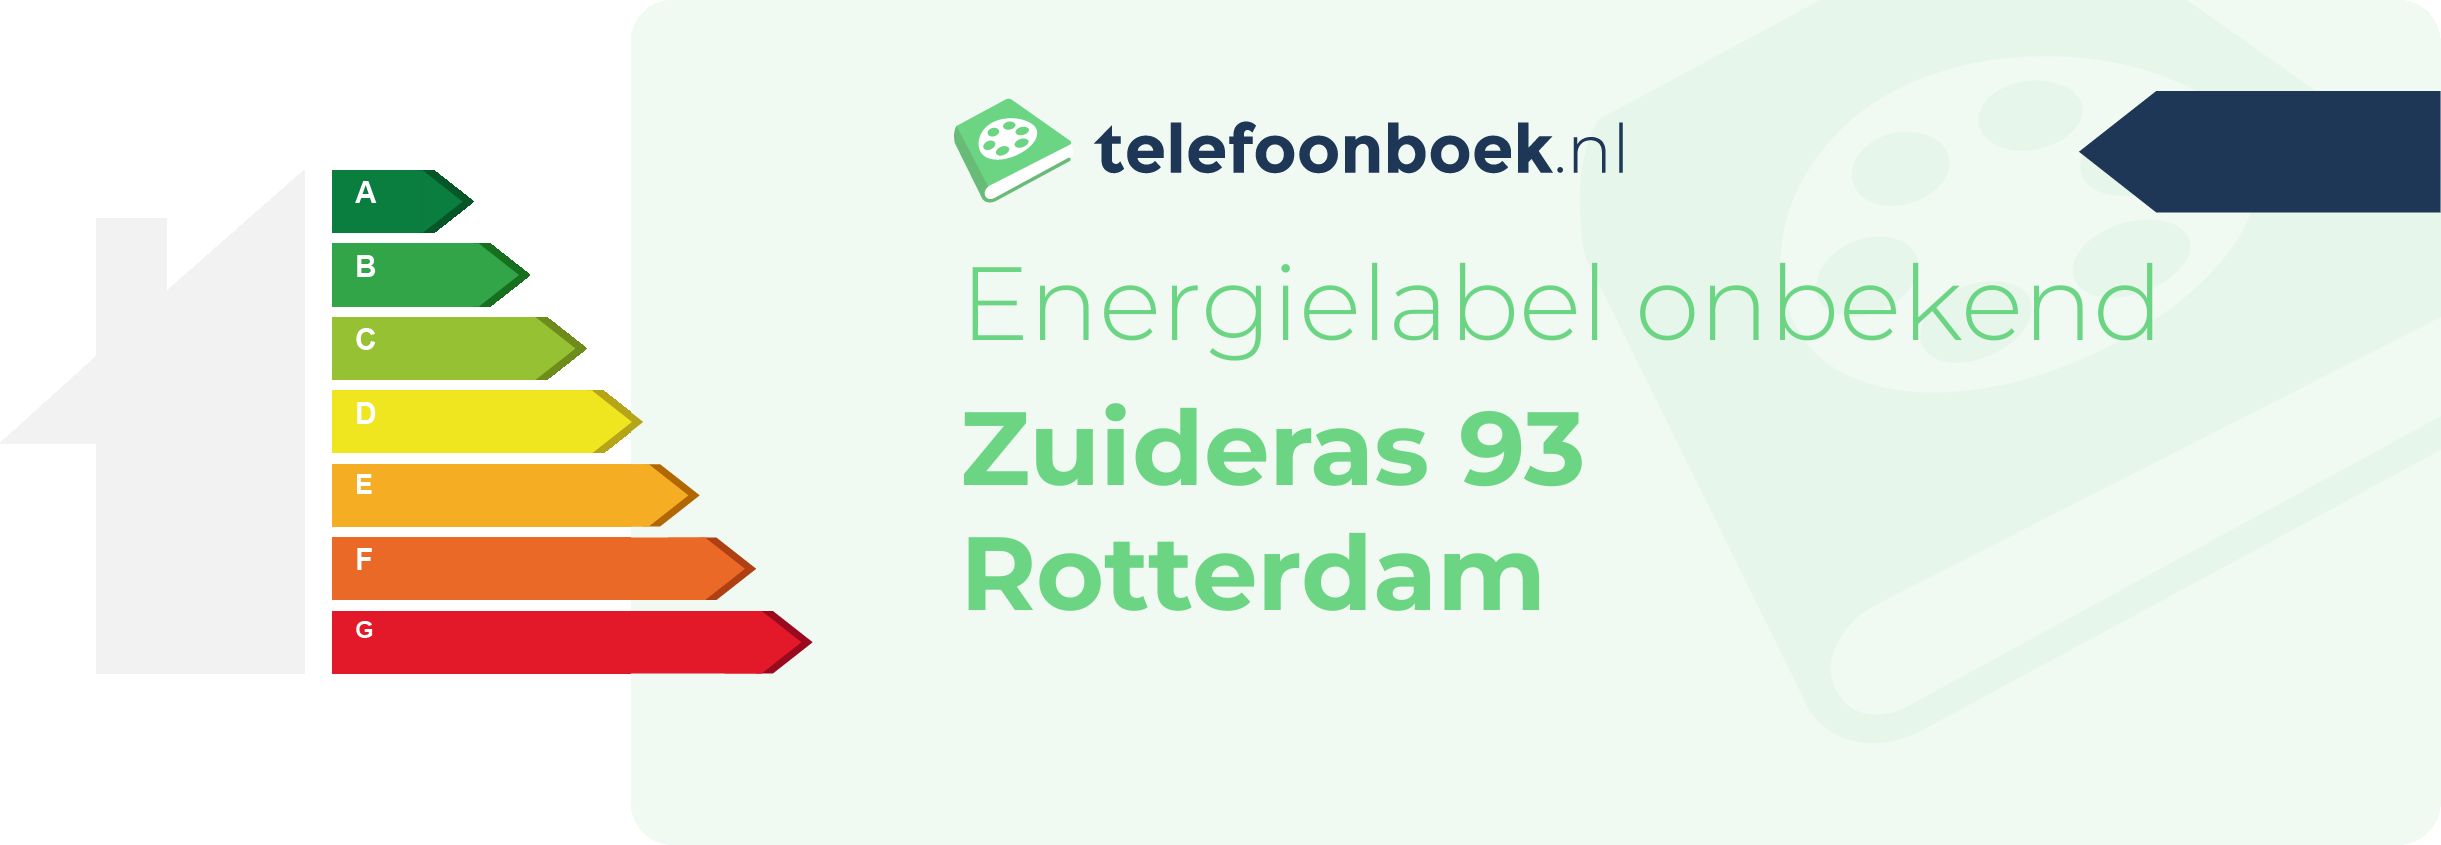 Energielabel Zuideras 93 Rotterdam